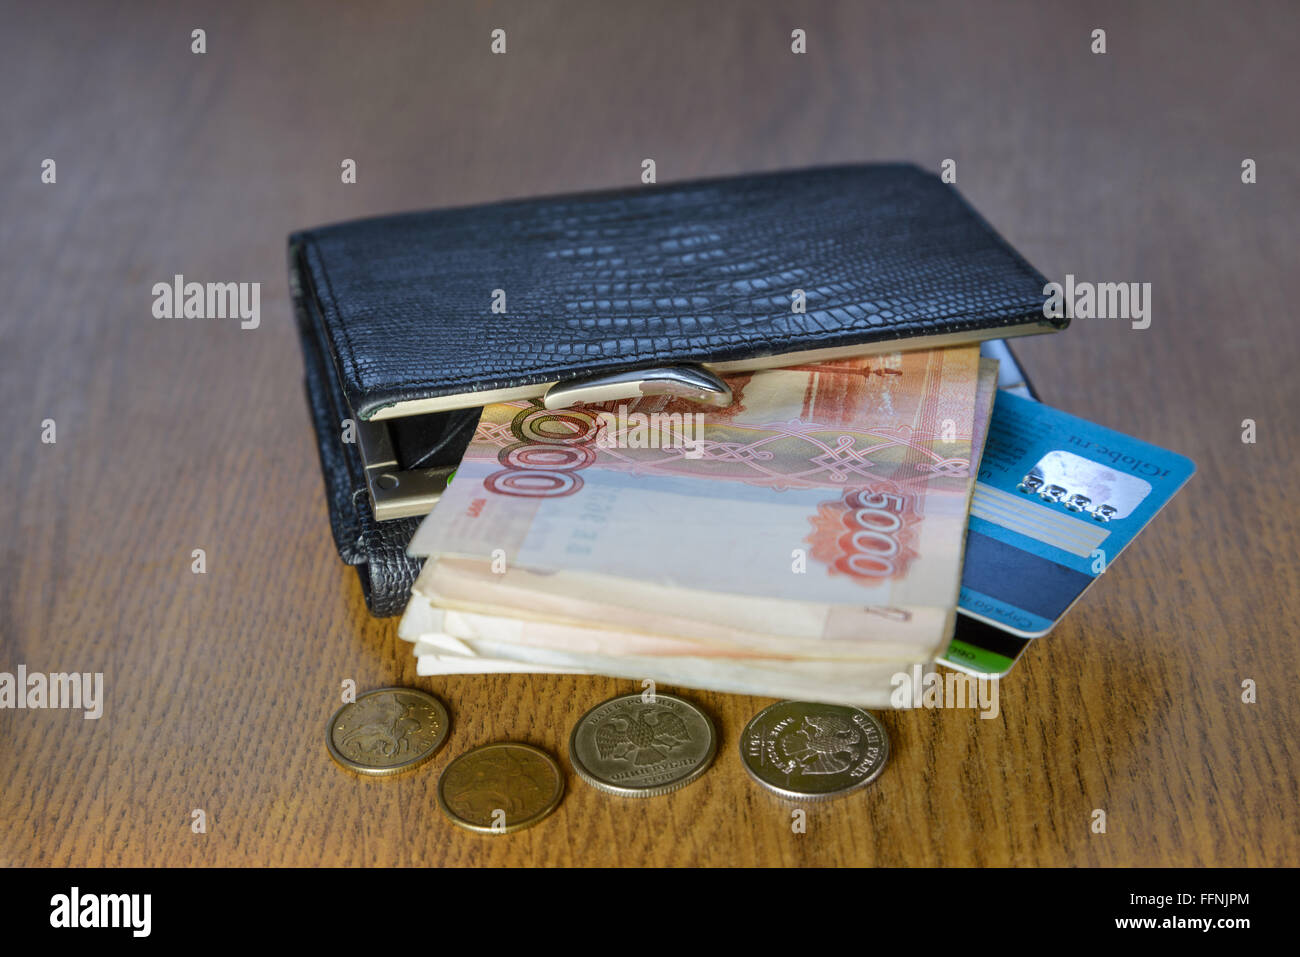 Billetera con tarjetas de crédito y el dinero acostado sobre una mesa de madera Foto de stock